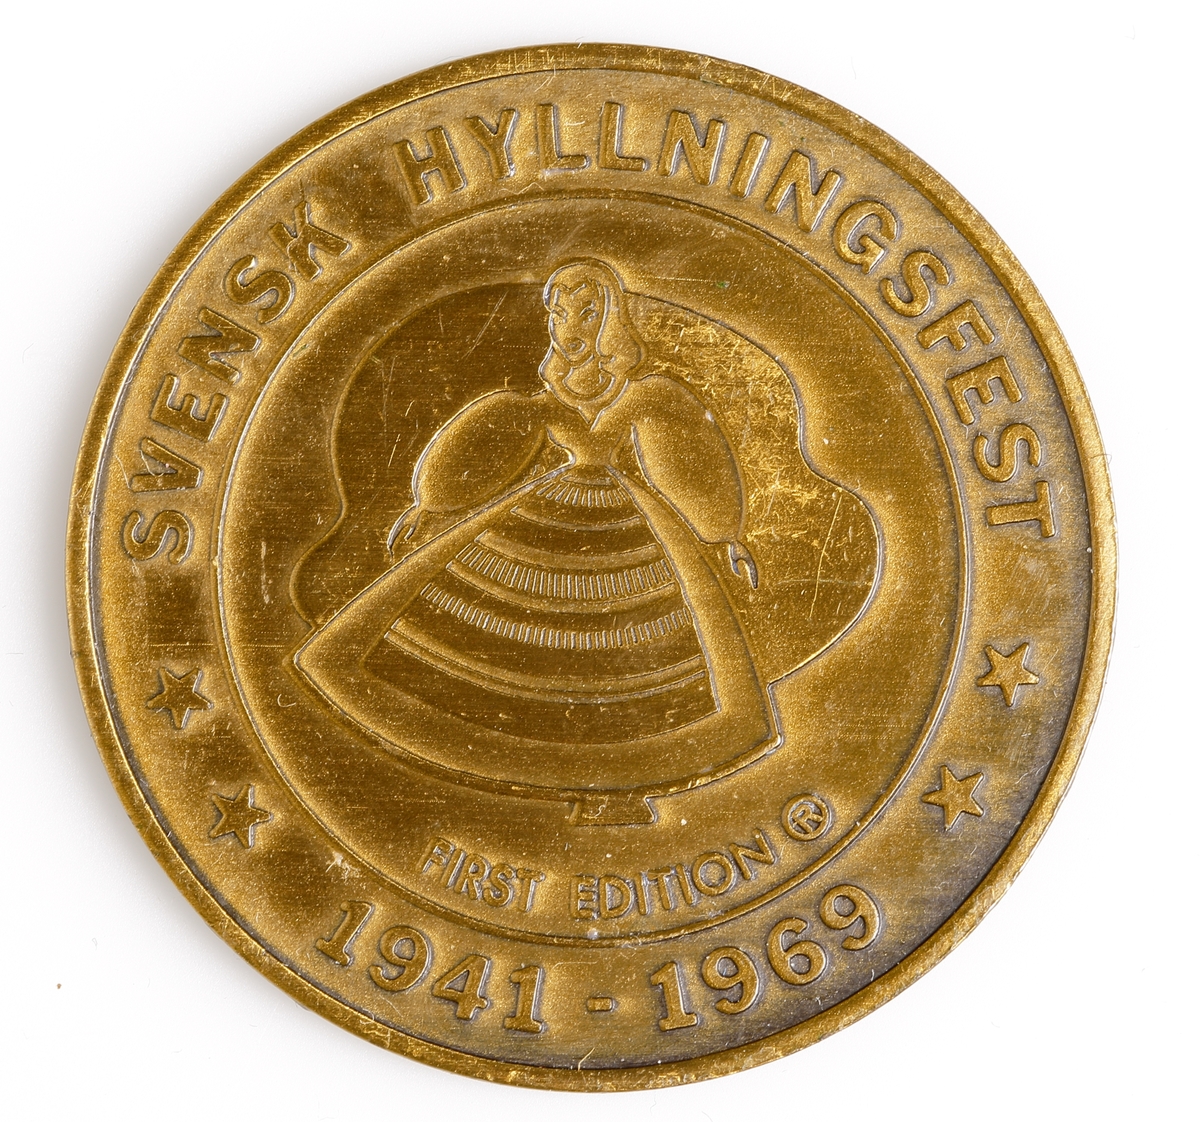 Medalj i mässing med en dalahäst avbildad på åtsidan, detta tillsammans med texten "LINDSBORG, KANSAS 1869 CENTENNIAL 1969". Frånsidan har en stiliserad kvinna i folkdräkt avbildad centralt på medaljen omgärdad med texten "SVENSK HYLLNINGSFEST 1947-1969 FIRST EDITION". Denna medalj utgavs vid staten Kansas hundraårsjubileum 1969.